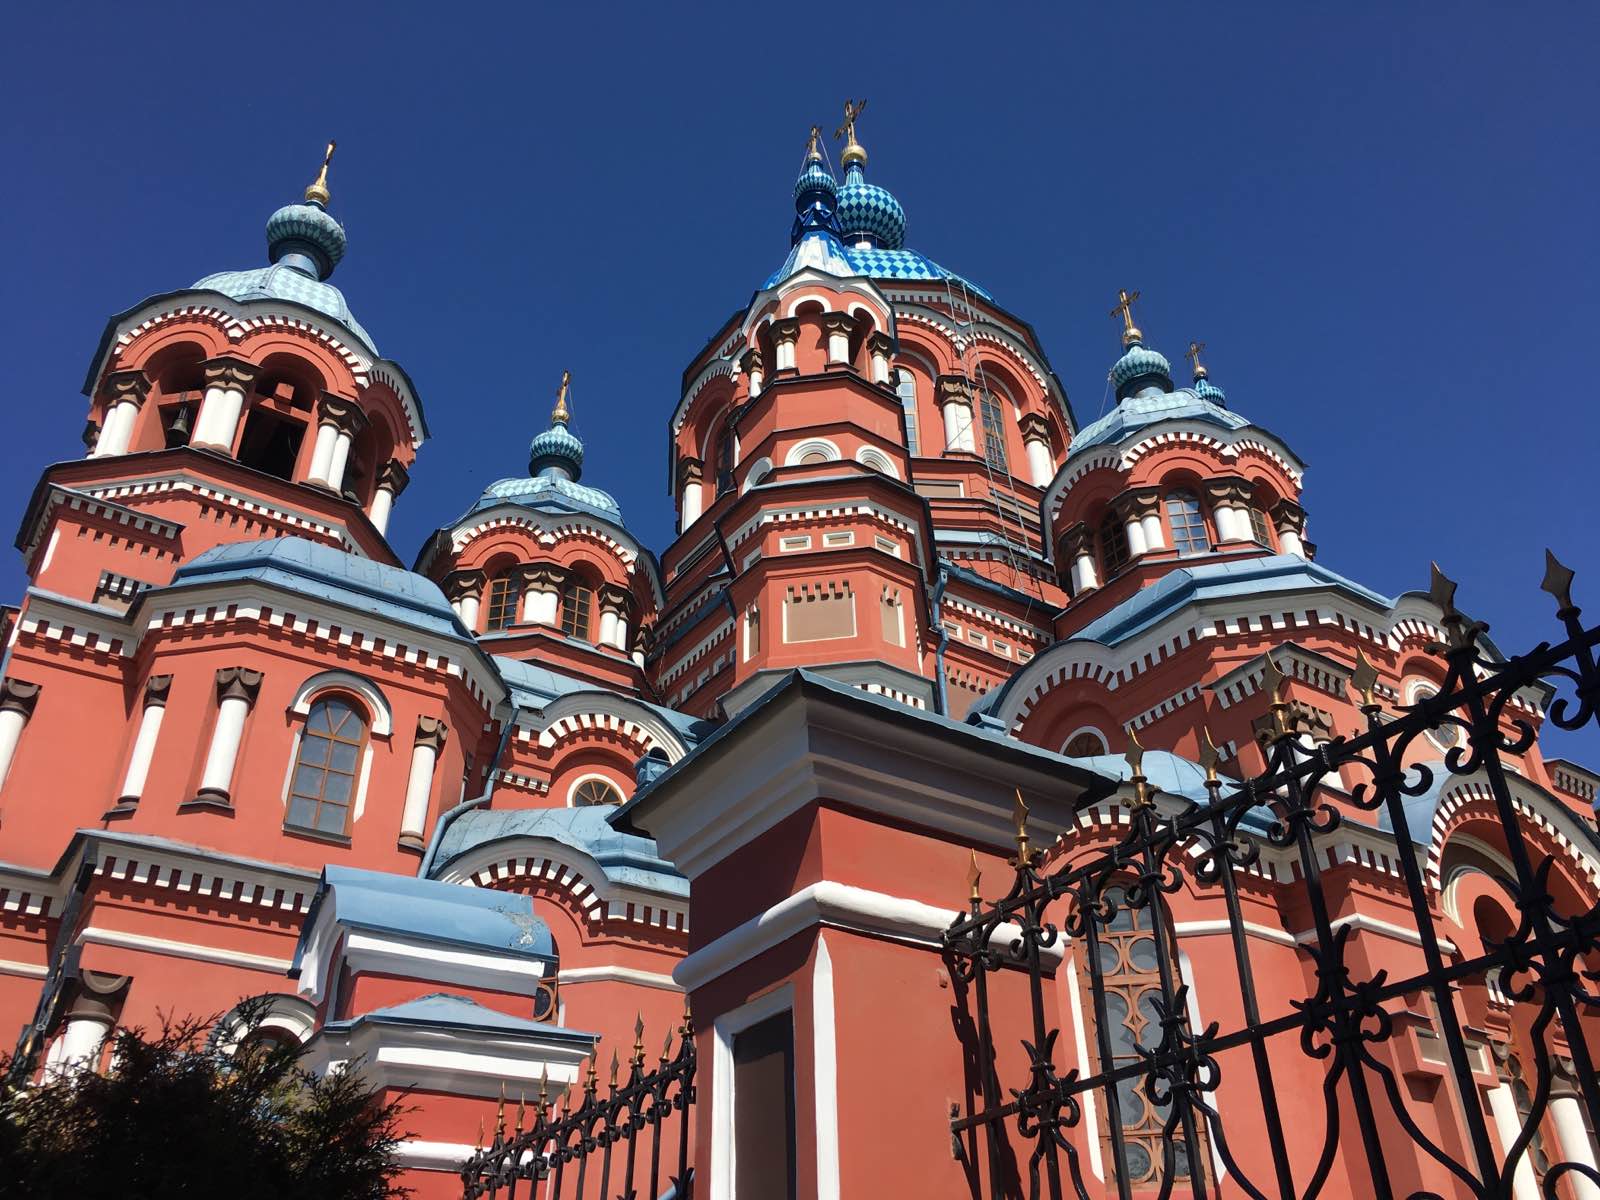 远远的就听见教堂的歌声 教堂色彩鲜艳 雕塑精致 装潢壮观 是西伯利亚最